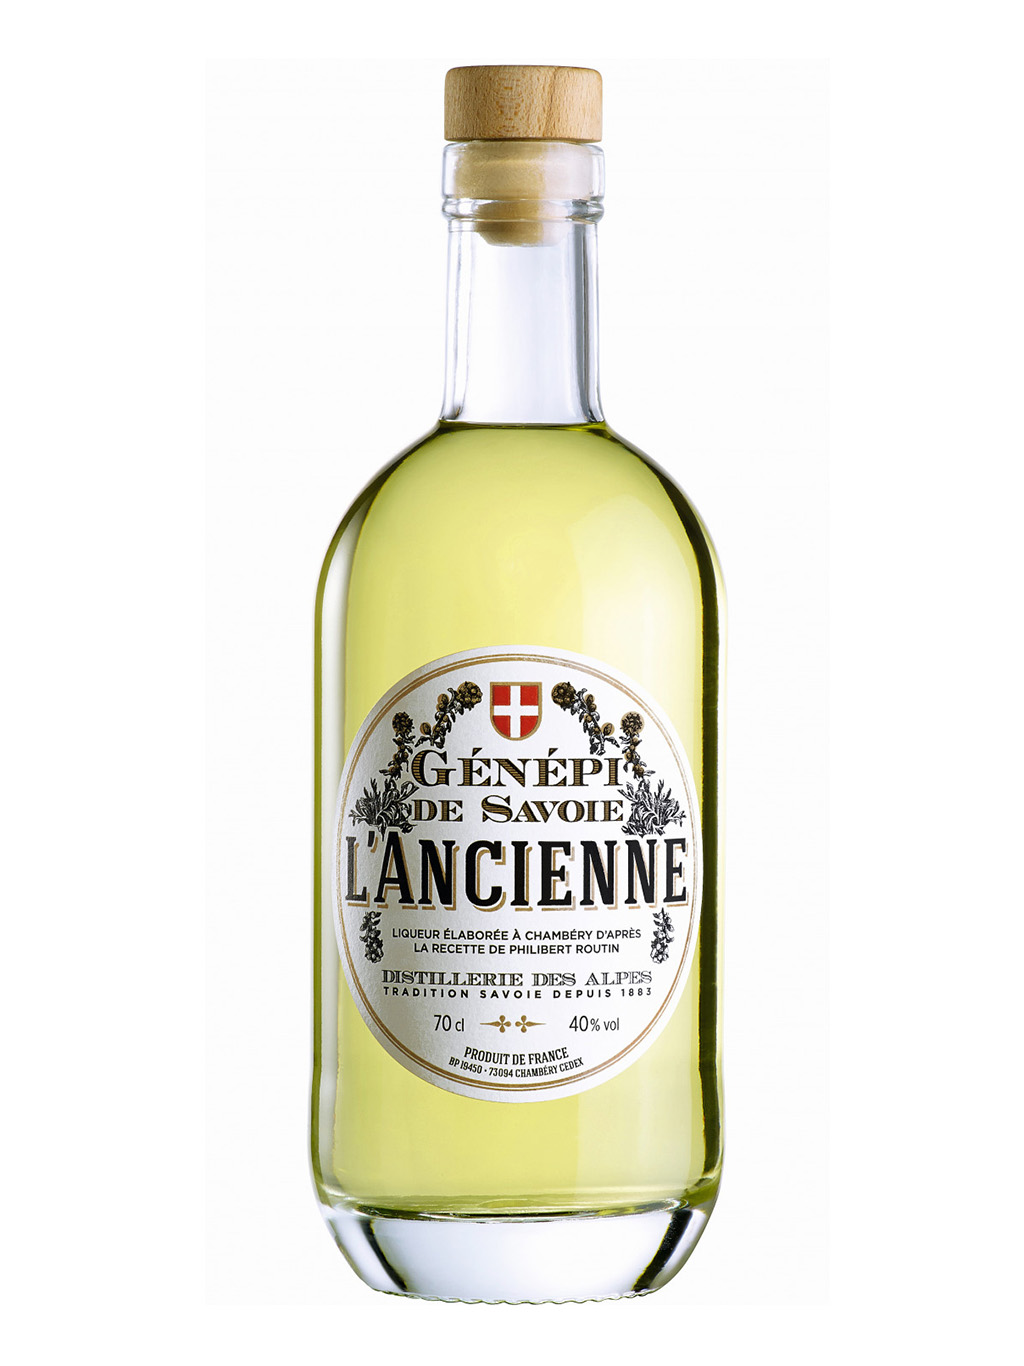 Pro francouzské Alpy je typický likér Génépi vyráběný z pelyňku